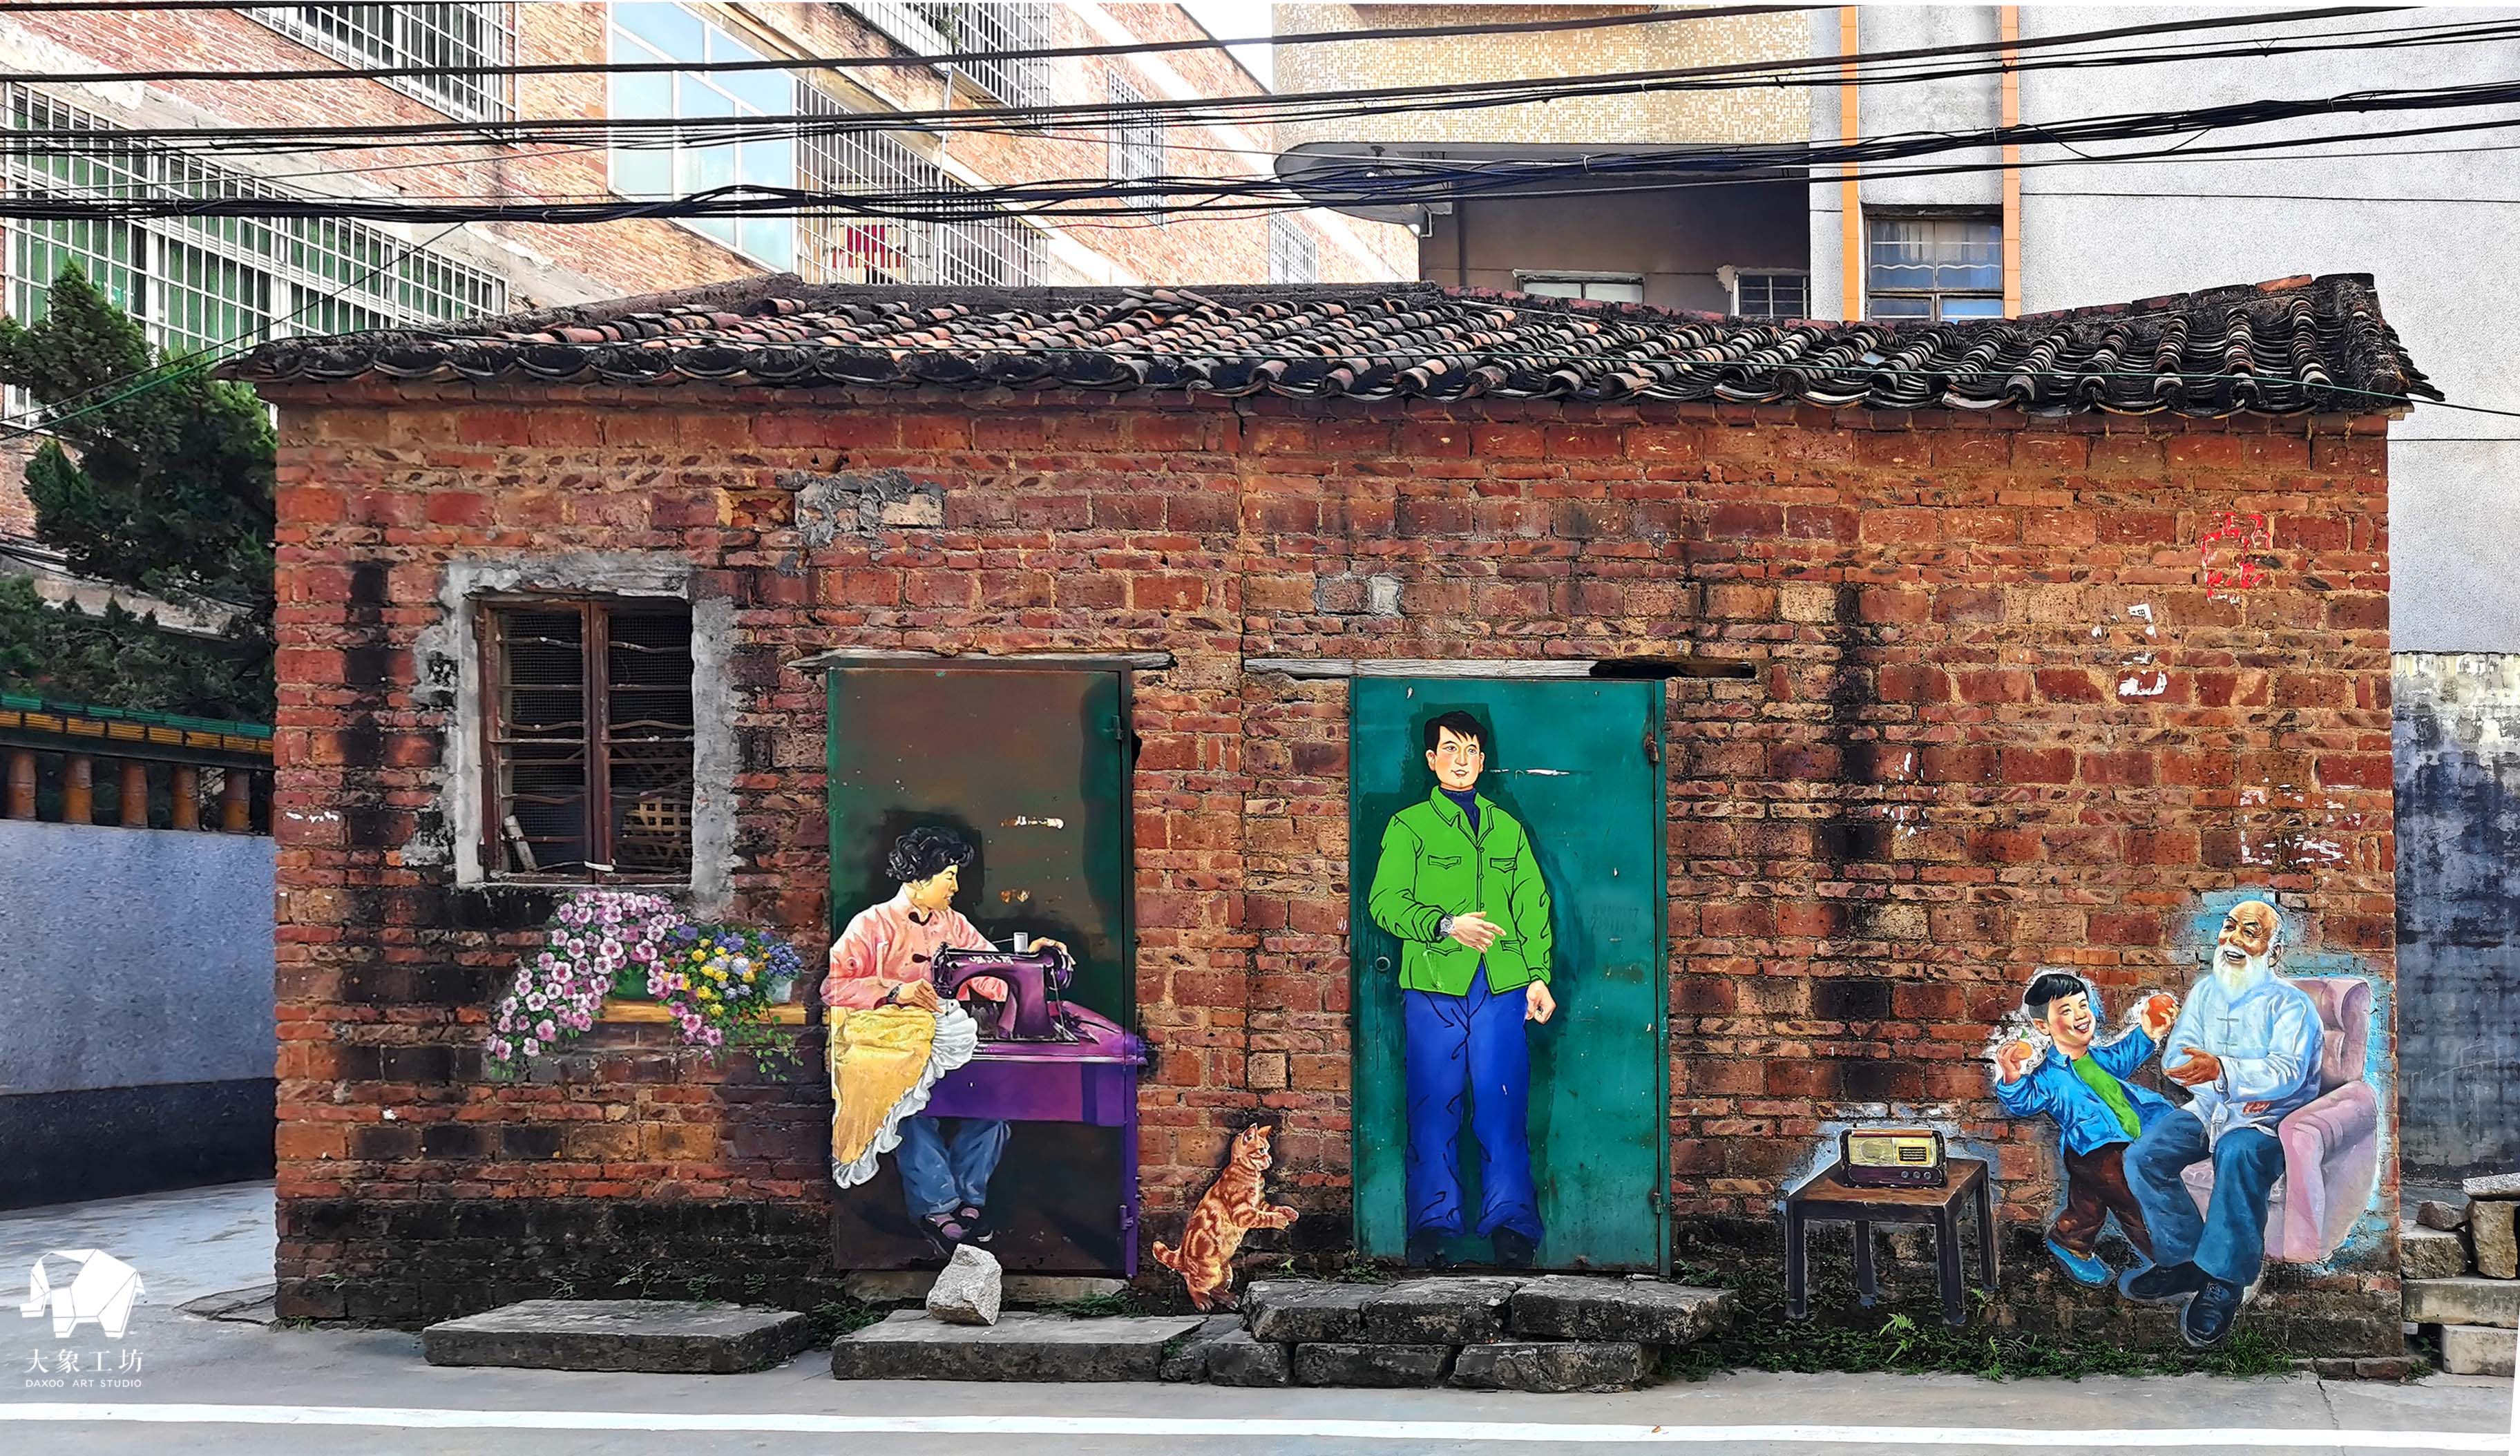 大象工坊广州白云区营溪村旧年代人物创意墙绘